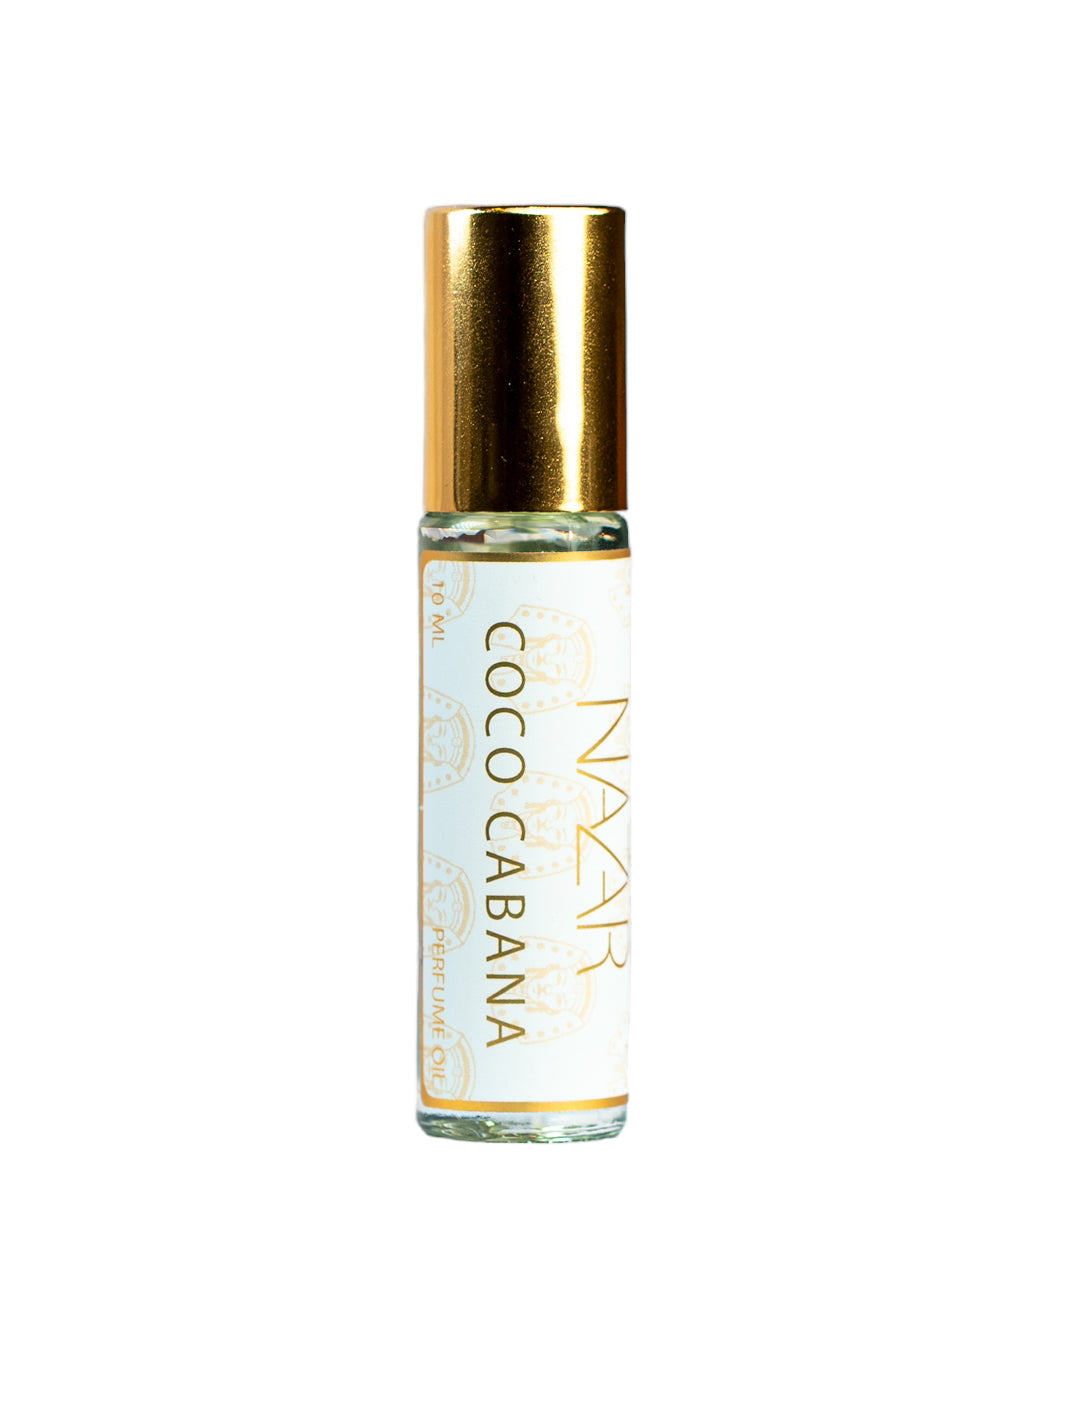 Coco Cabana Roll-On Perfume